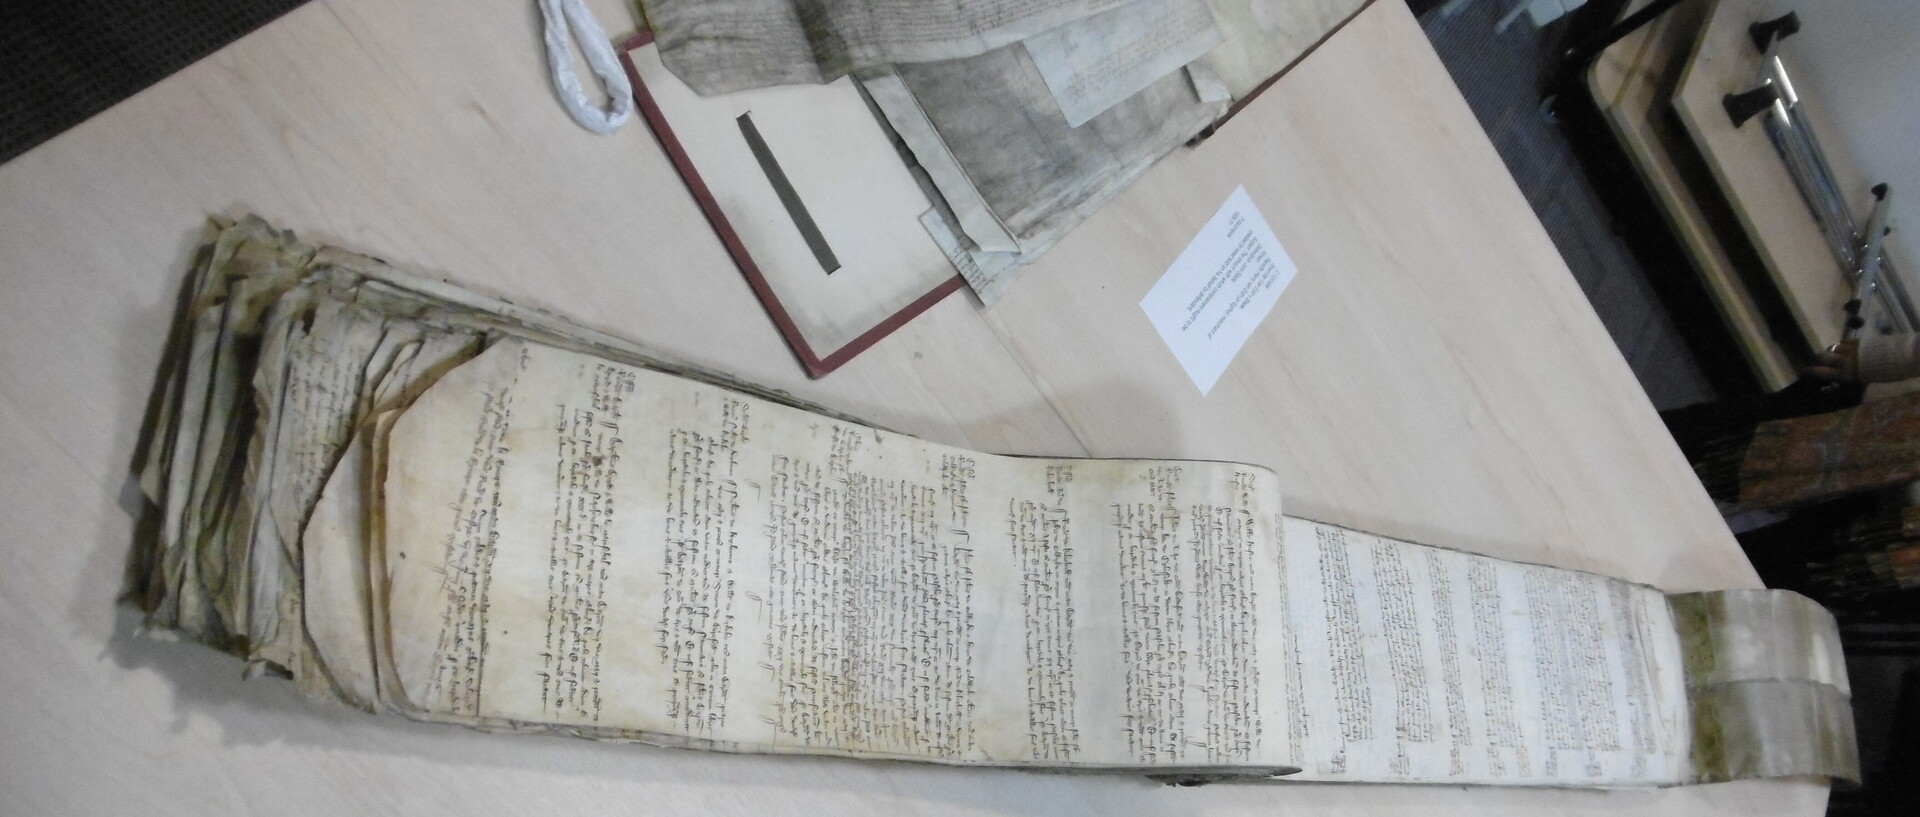 Abbildung eines Manuskriptes, das auf einem Tisch ausgebreitet liegt.